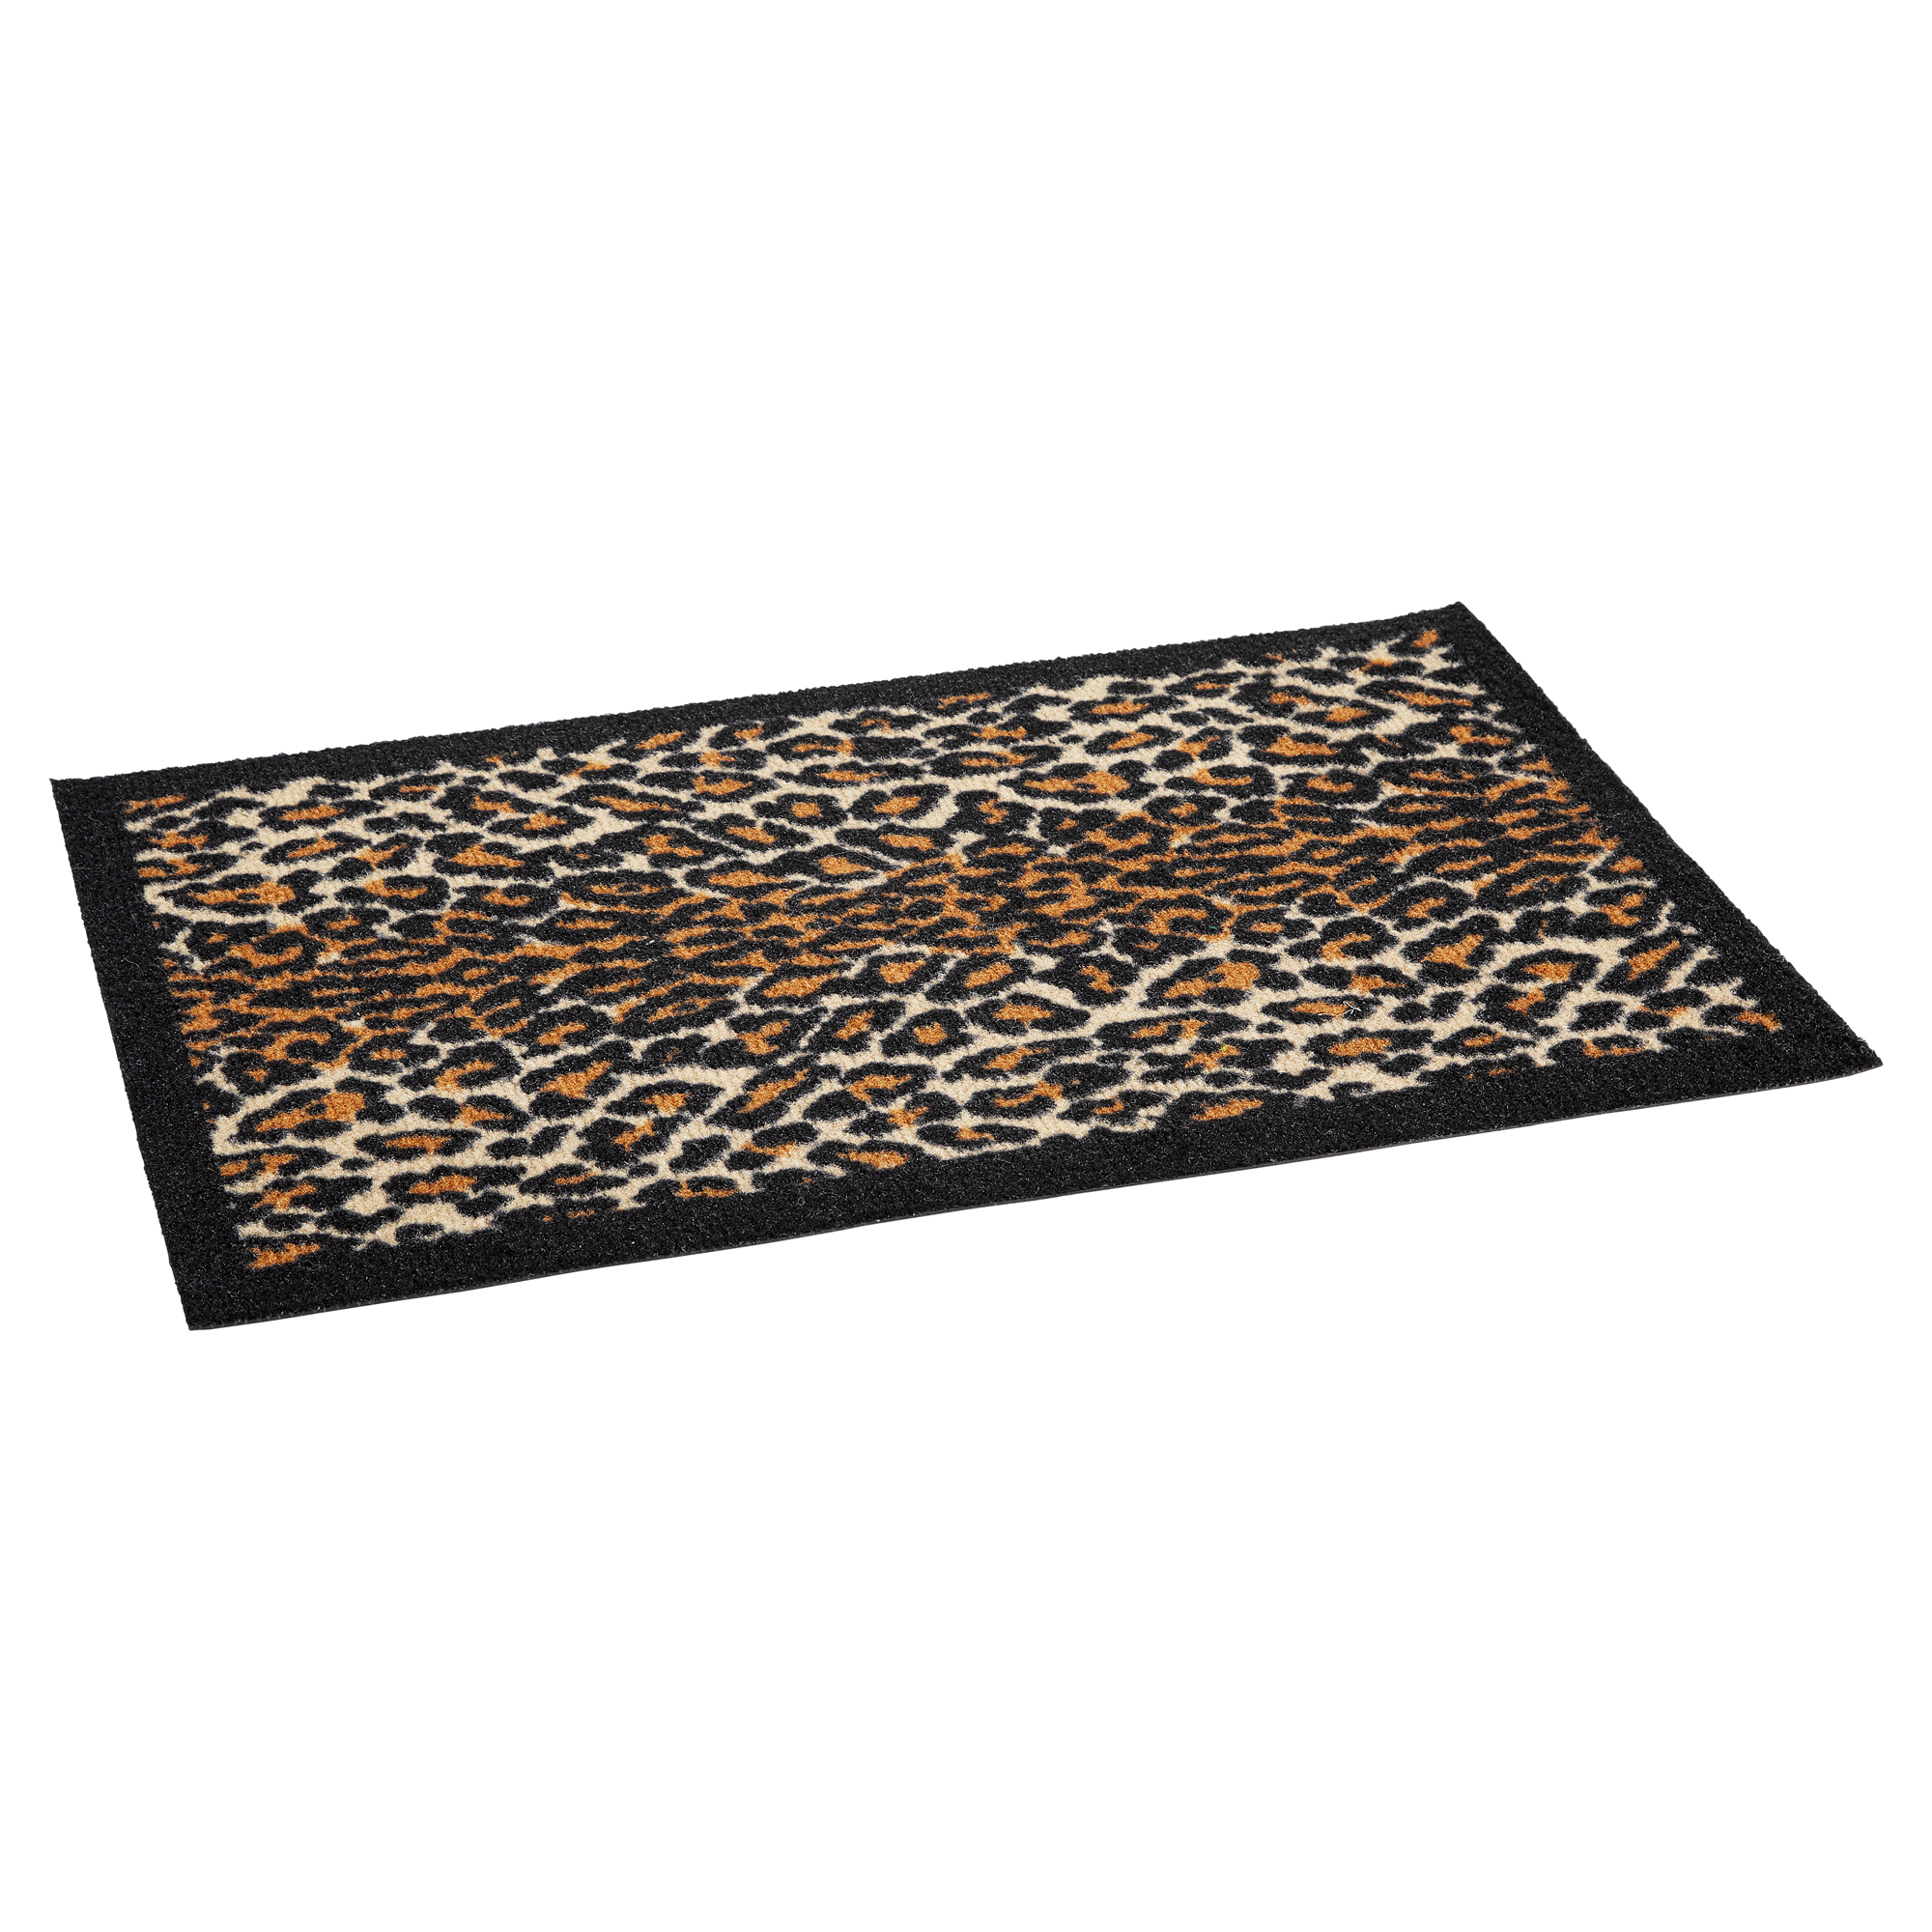 Fußmatte "Gepard" Polyamid braun 58 x 39 cm + product picture